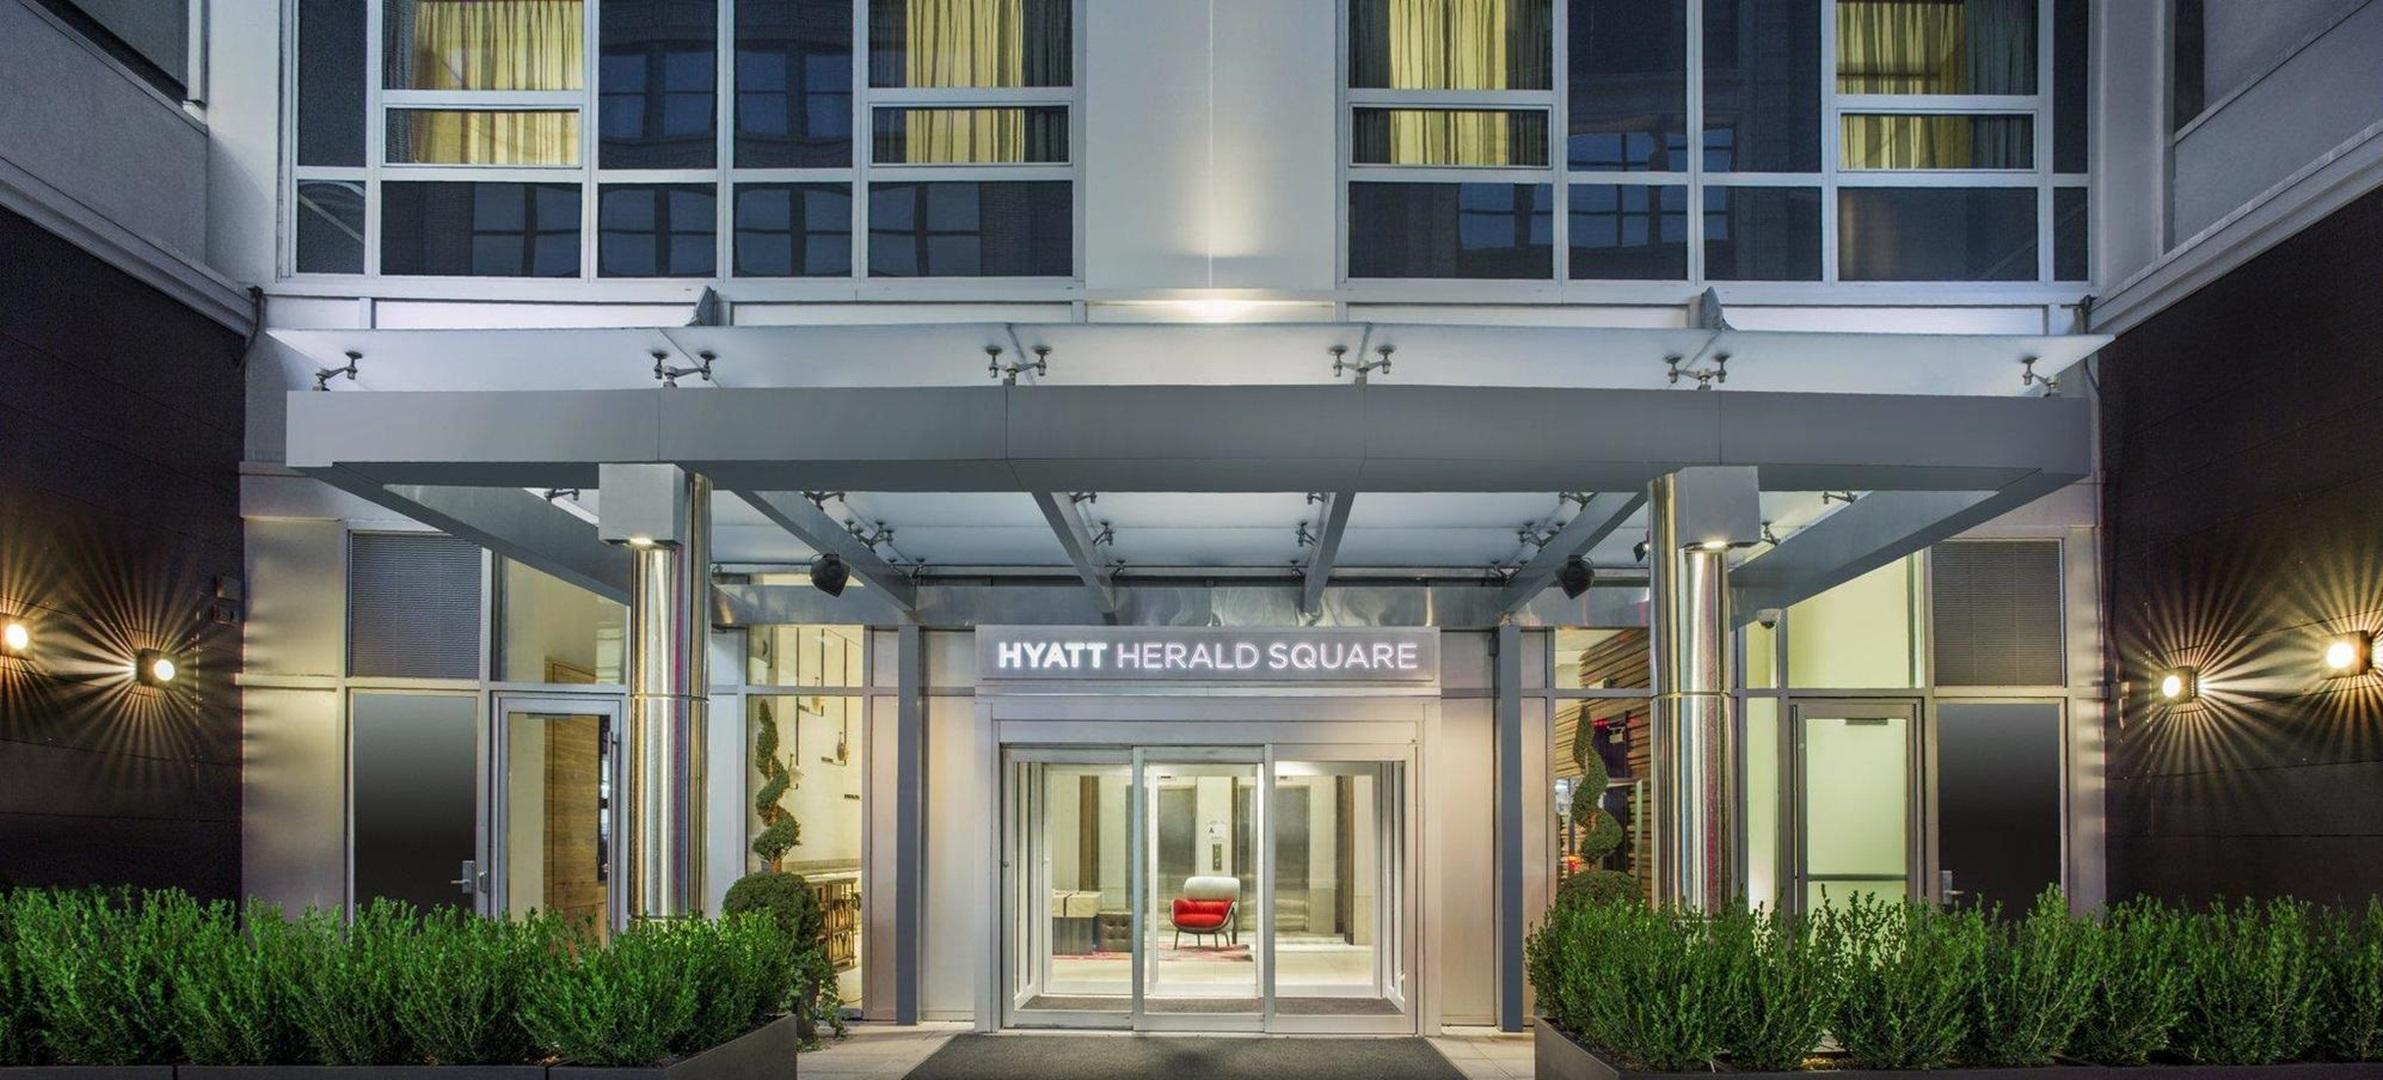 Exterior View Hyatt Herald Square New York